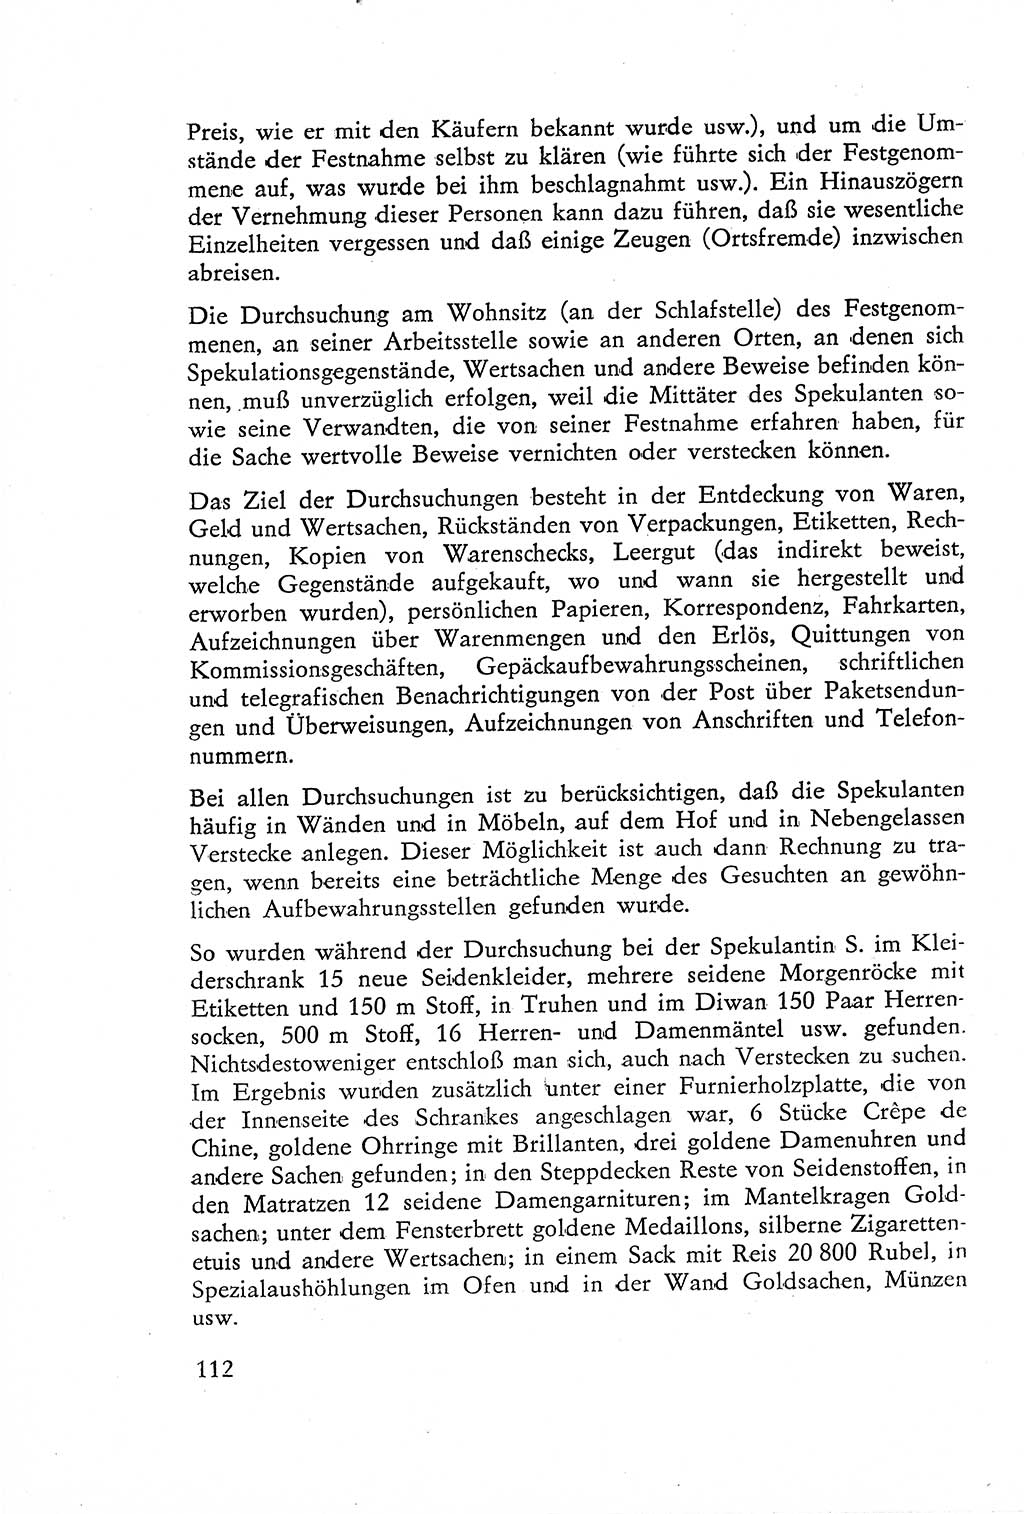 Die Untersuchung einzelner Verbrechensarten [Deutsche Demokratische Republik (DDR)] 1960, Seite 112 (Unters. Verbr.-Art. DDR 1960, S. 112)